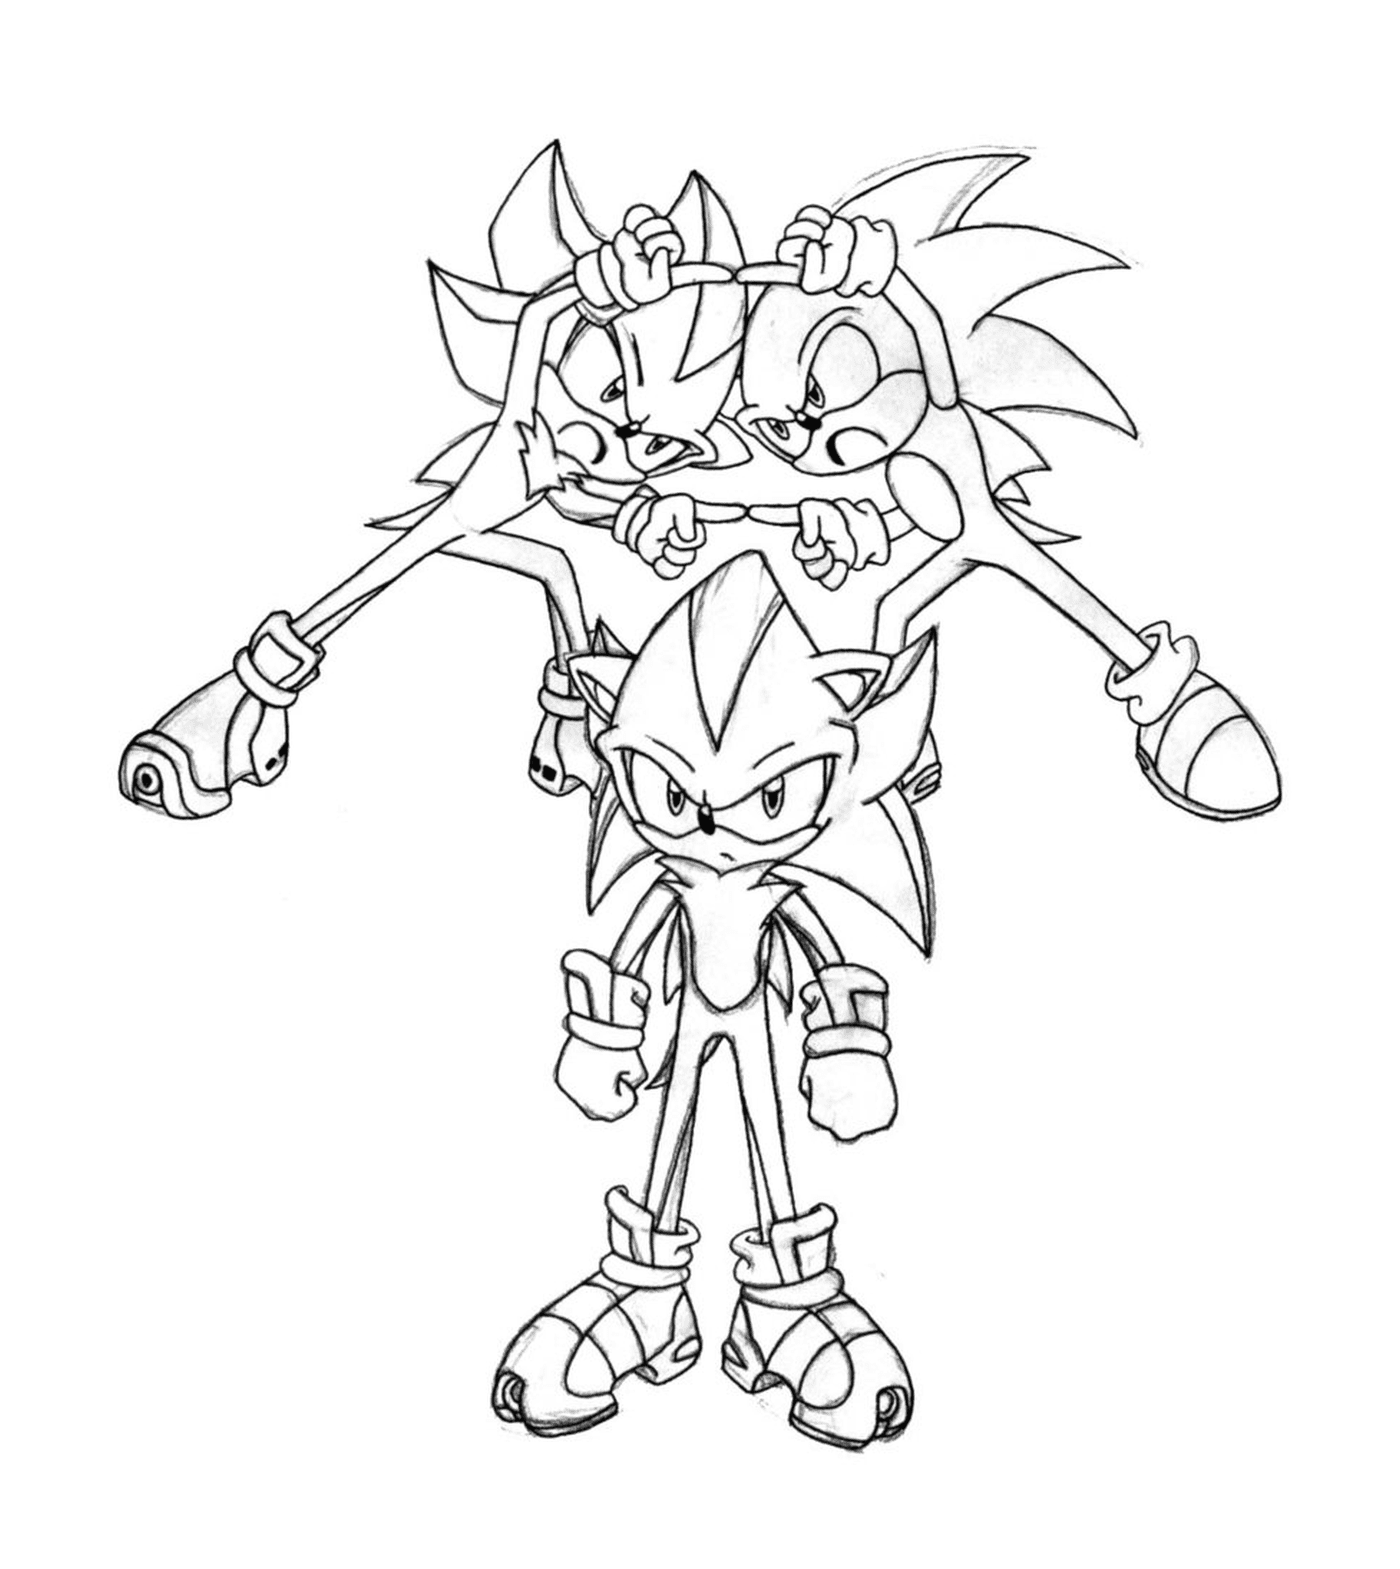  Sonic lleno de energía 